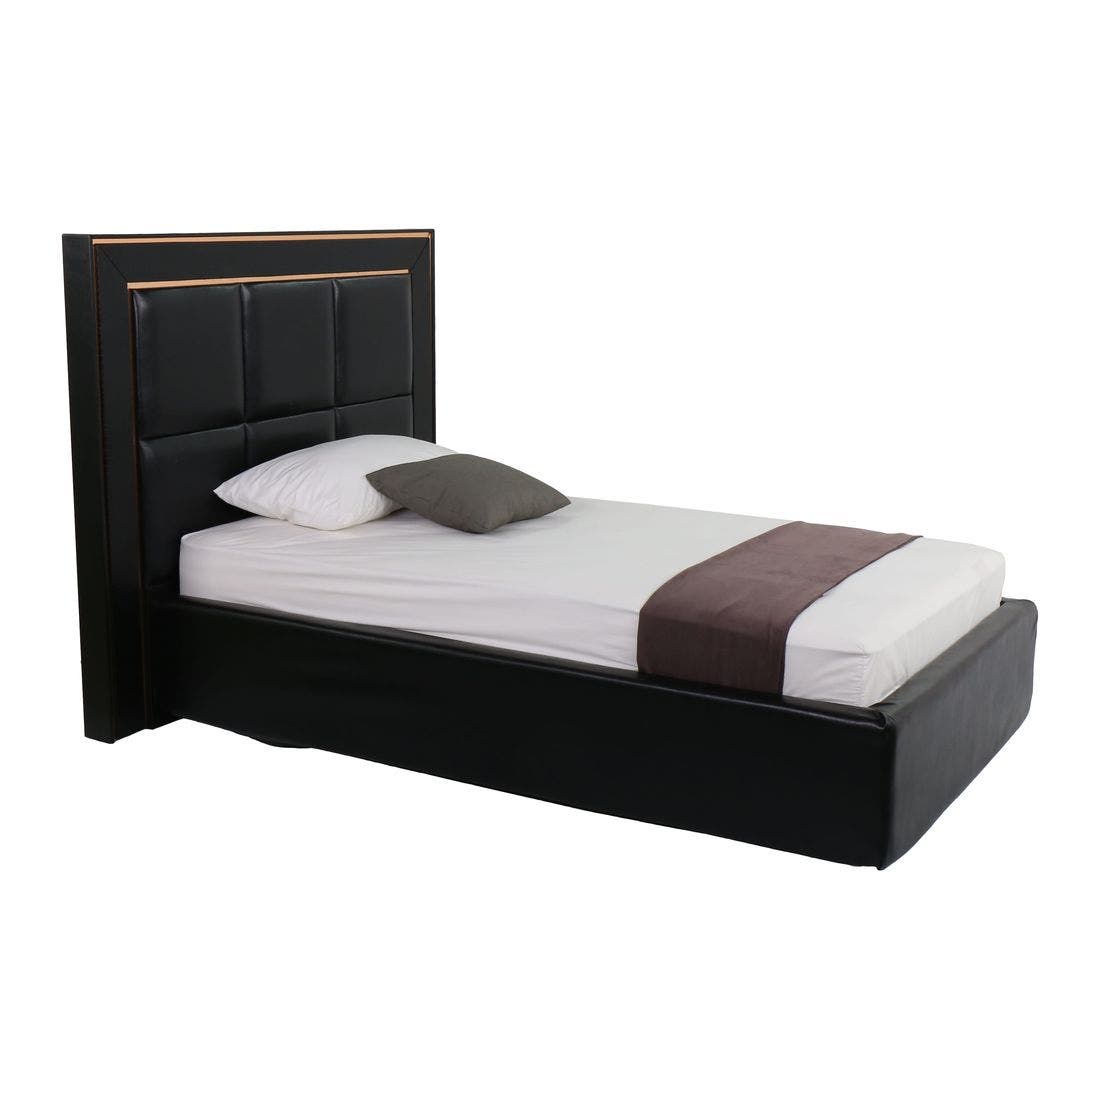 เตียงนอน ขนาด 3.5 ฟุต รุ่น Bellini สีดำ-02